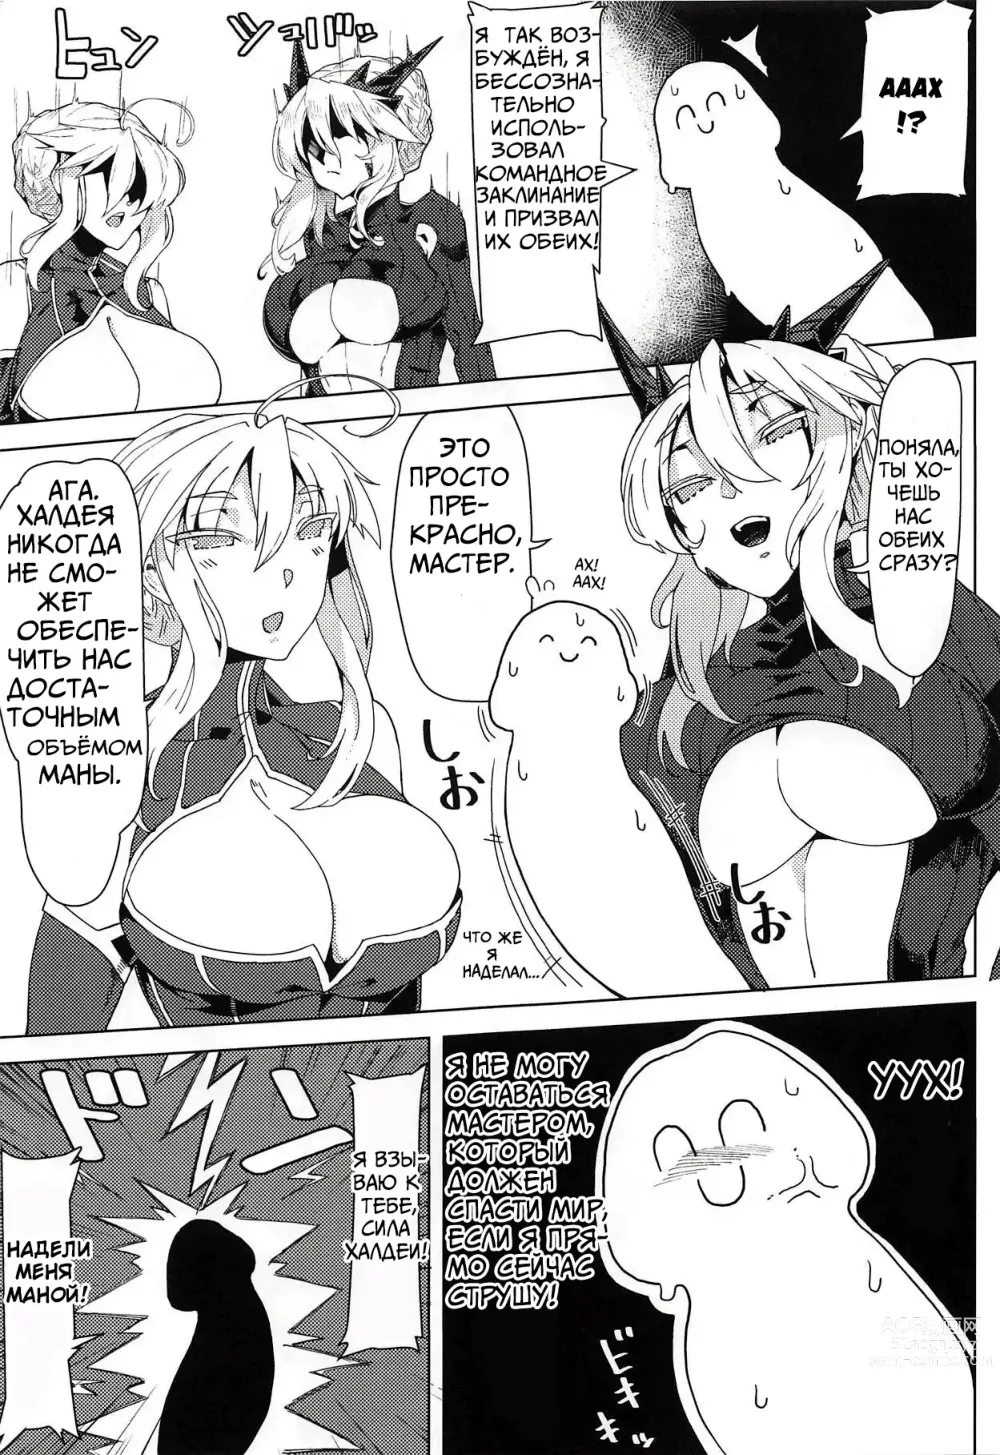 Page 4 of doujinshi Как получить много ХХХ с сисястыми Артуриями